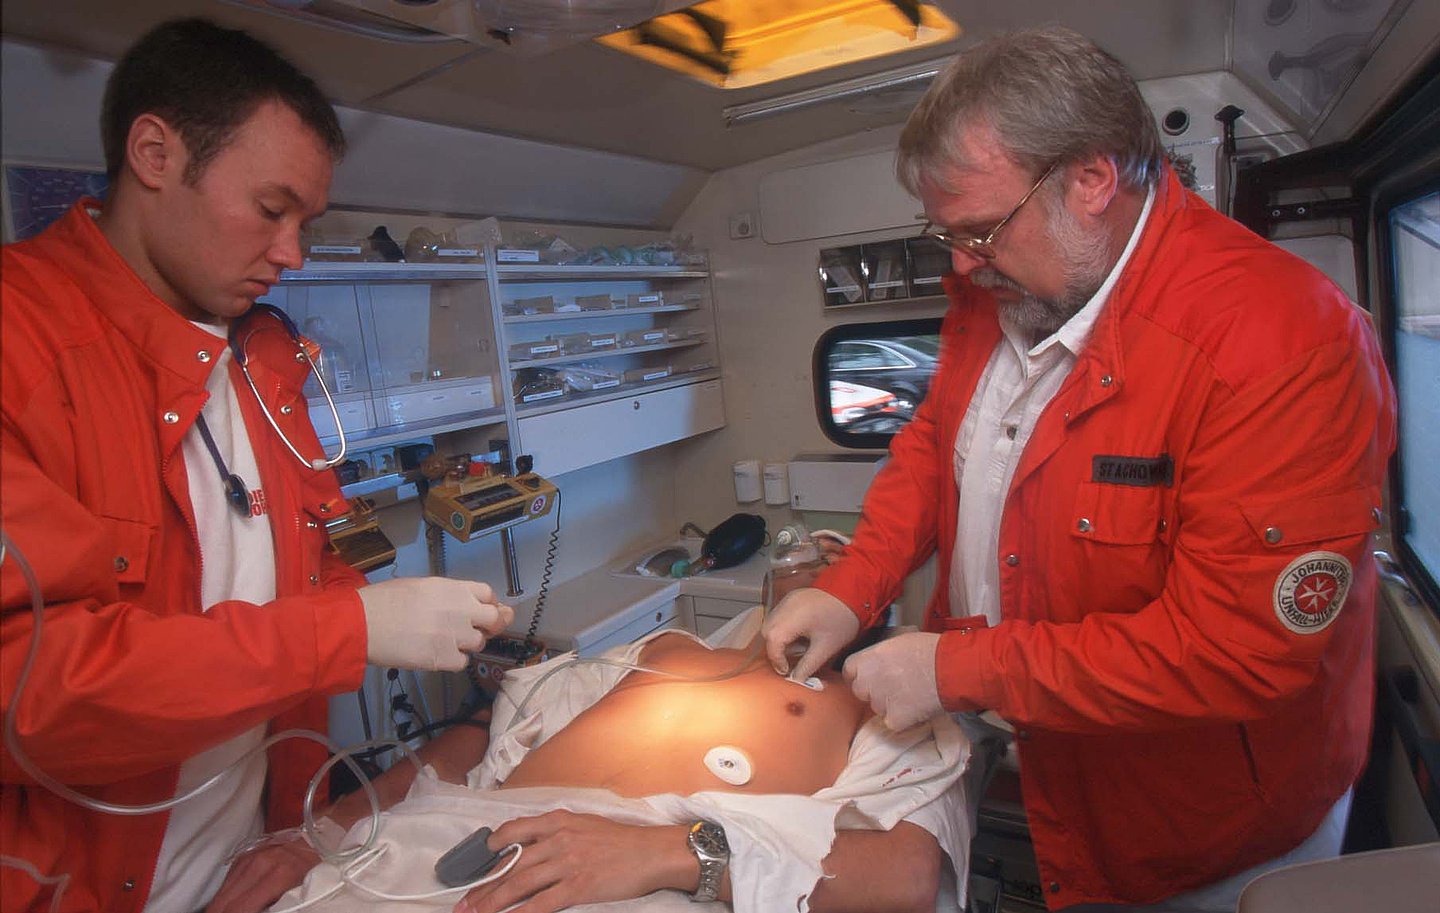 Das Bild zeigt zwei Rettungssanitäter mit orangen Rettungsjacken beim EKG im Rettungswagen. In der Mitte liegt ein Patient mit Sauerstoffmaske, dem die Pads des EKG angelegt werden. Am linken Finger trägt er einen Pulsmesser.